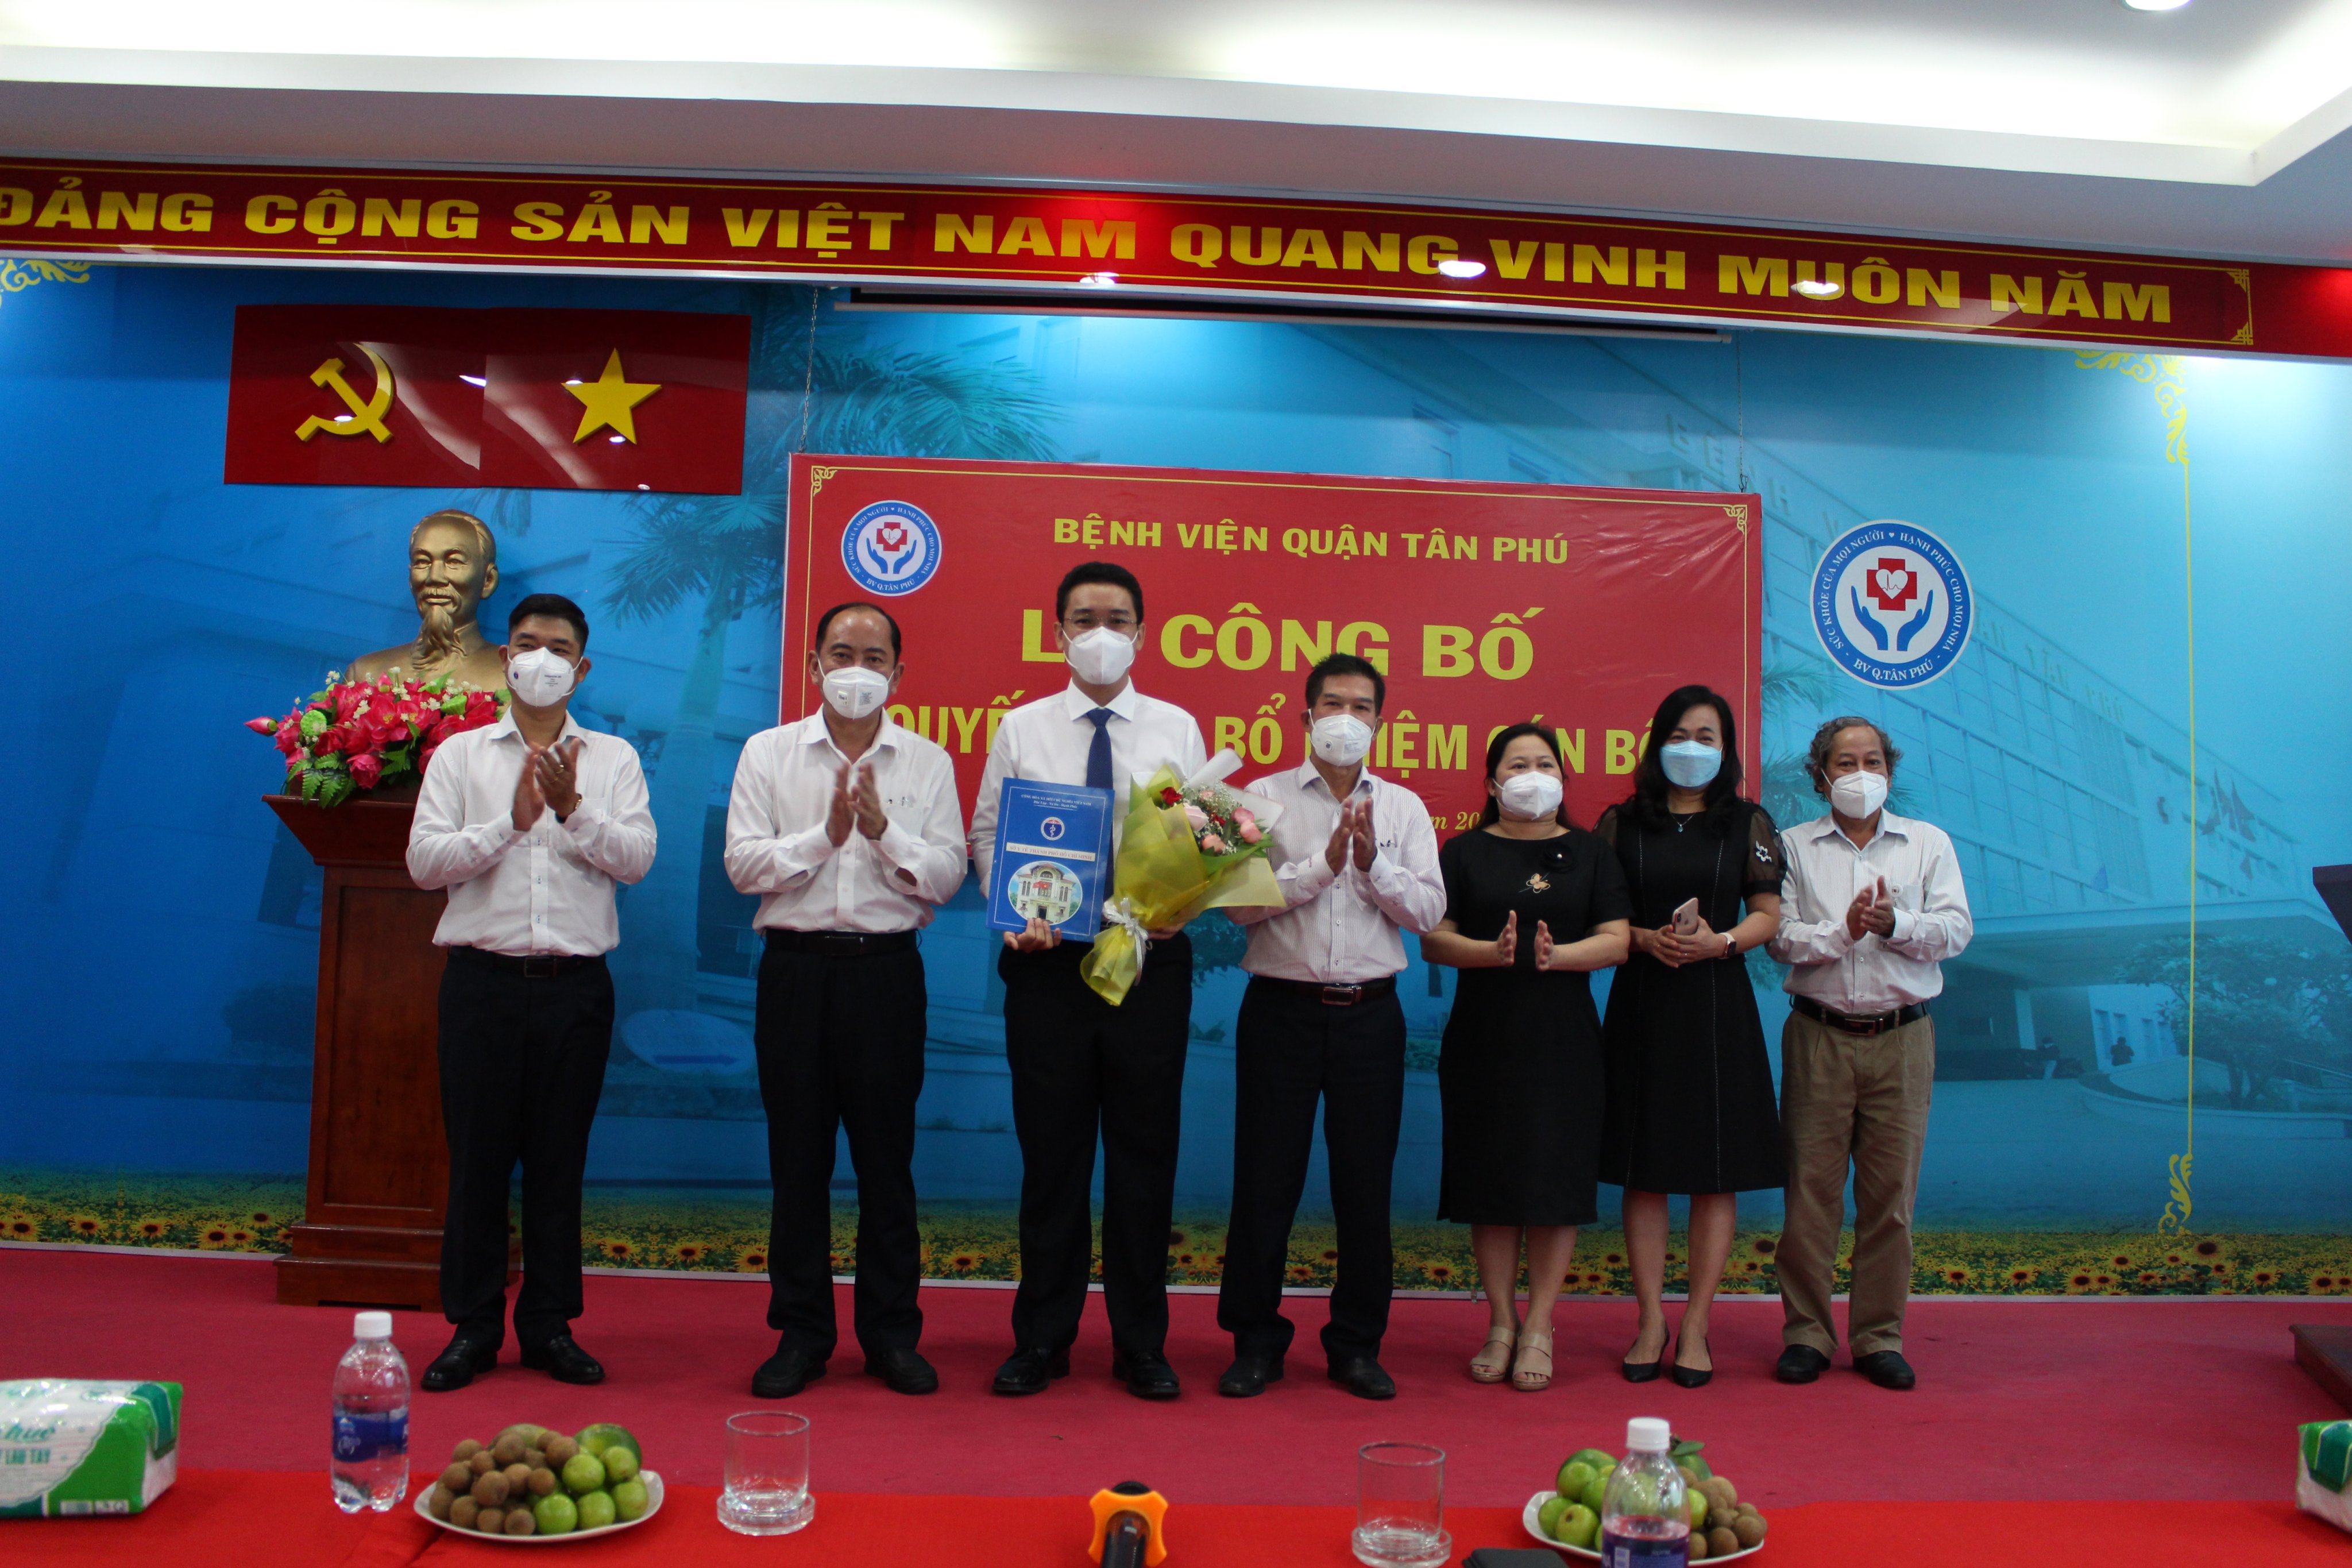 Lễ công bố quyết định bổ nhiệm Phó Giám đốc Bệnh viện quận Tân Phú